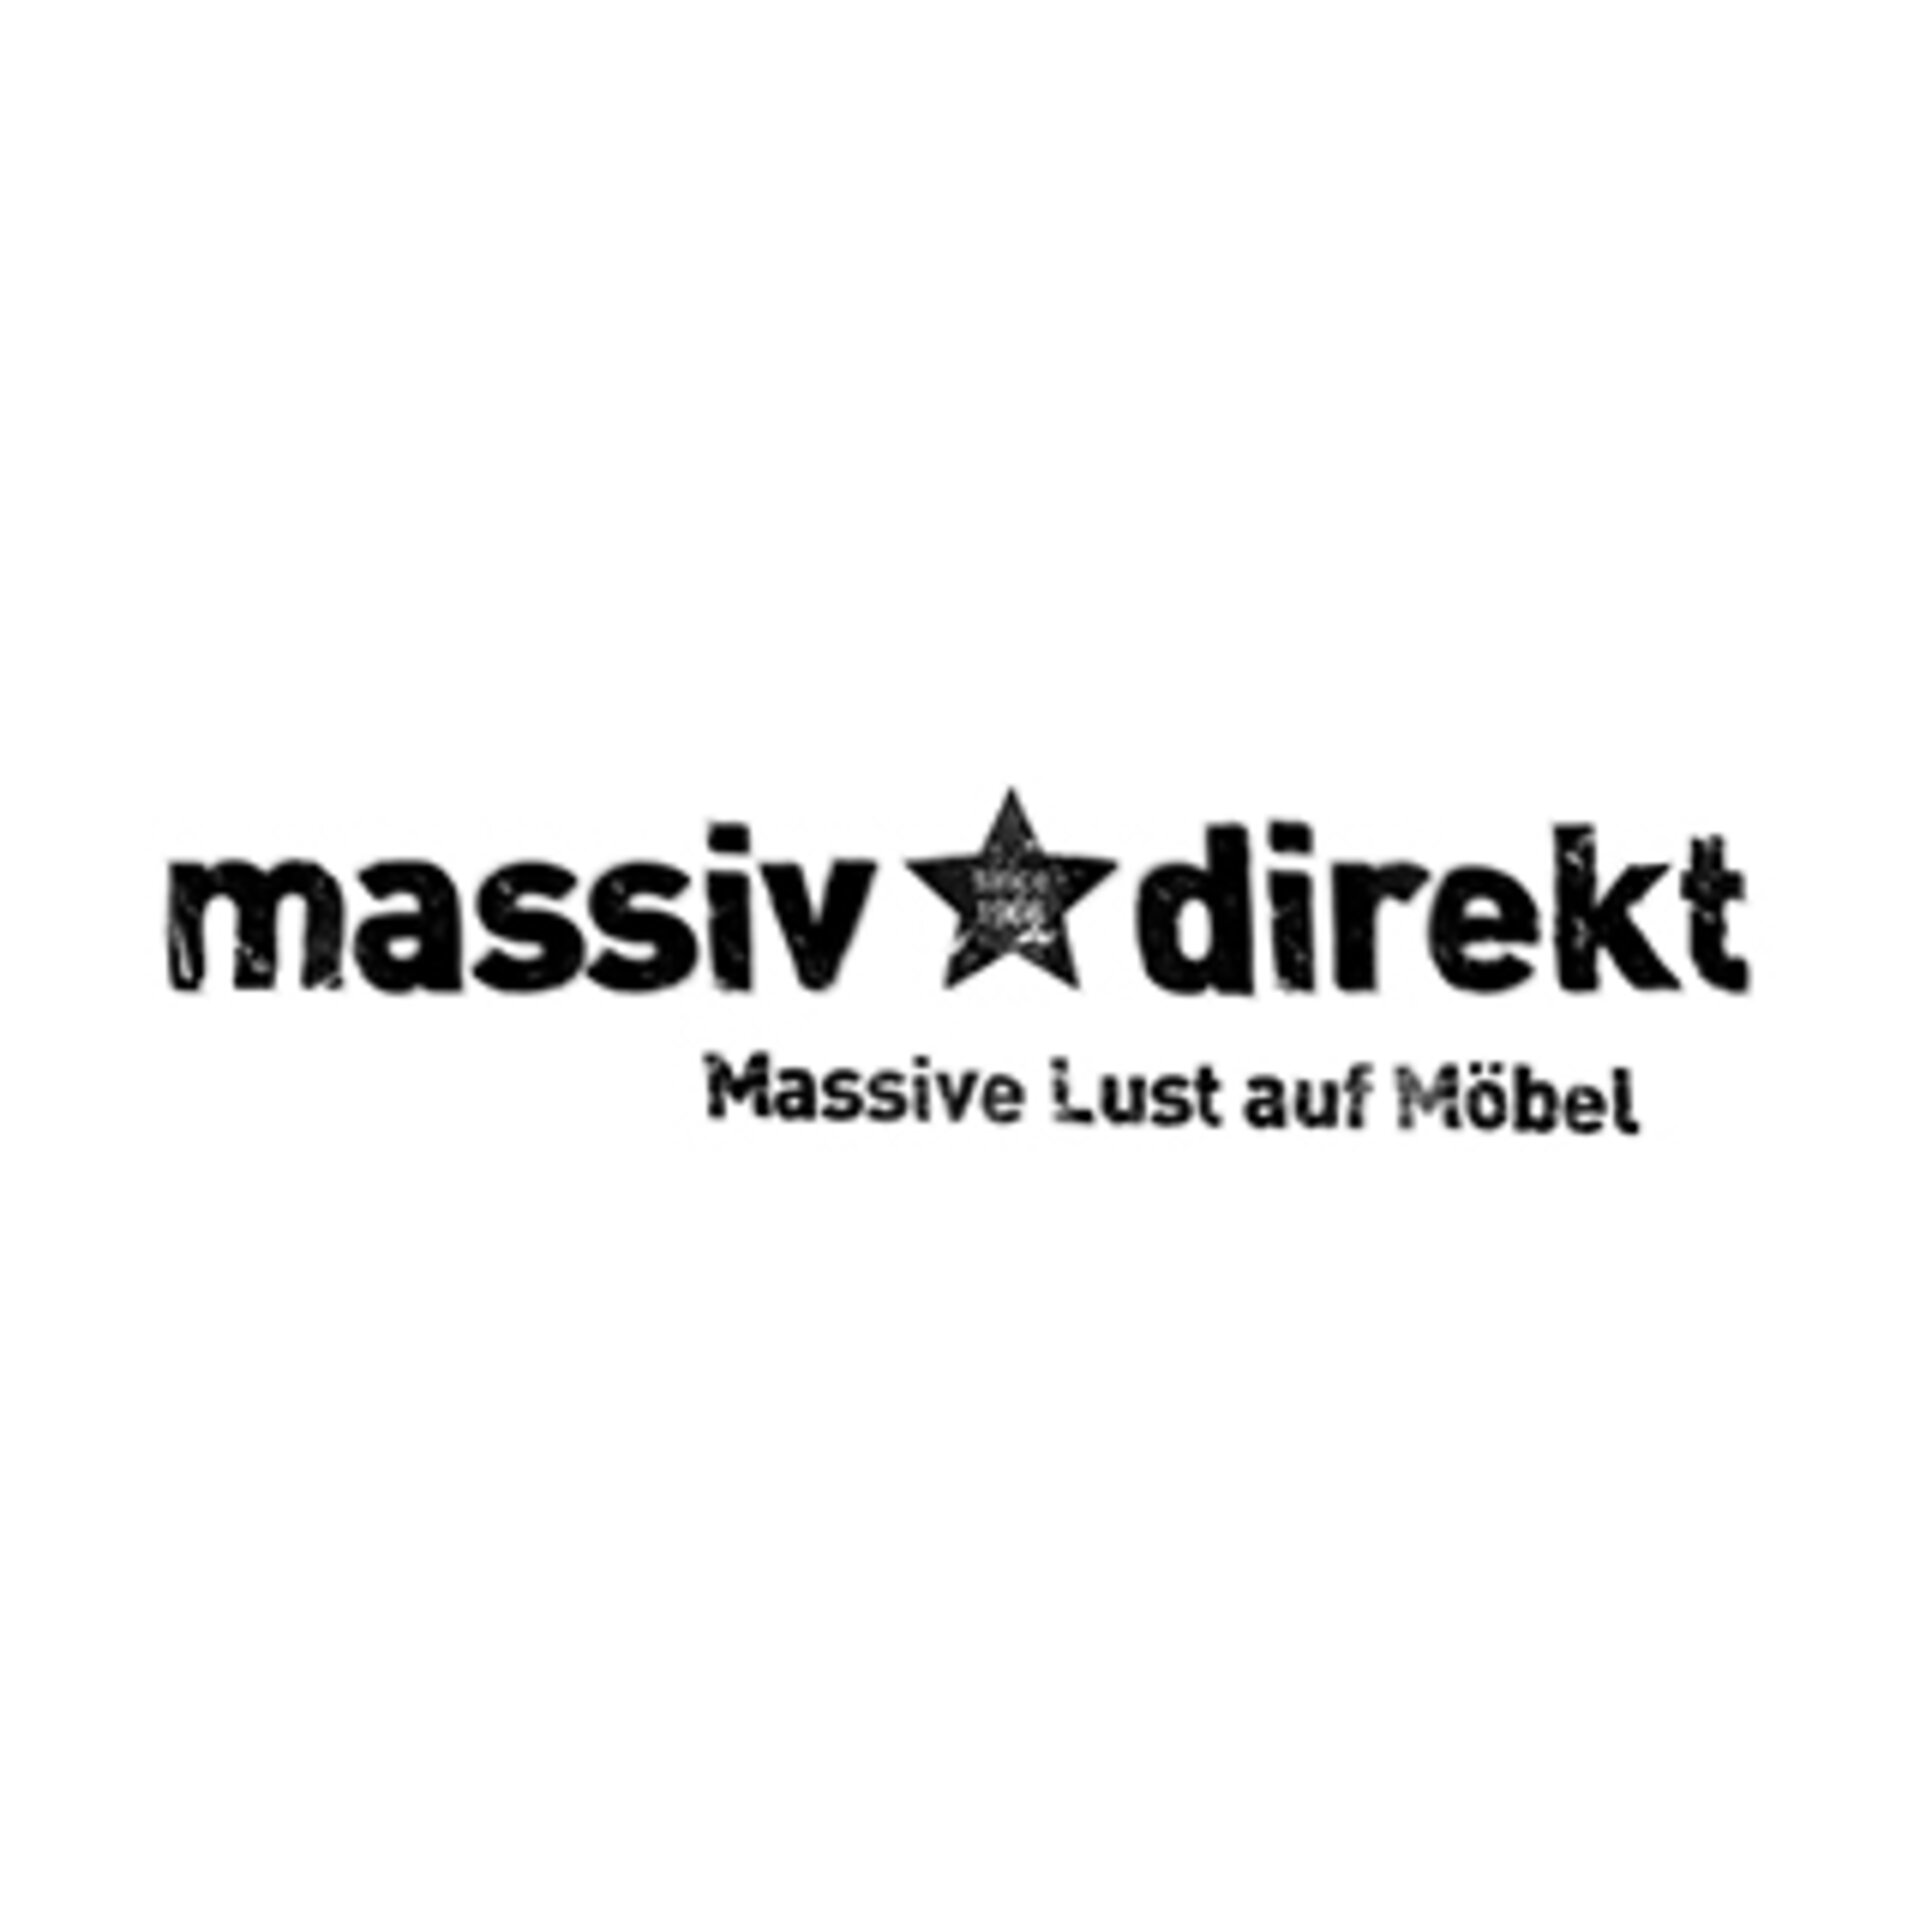 Logo "massiv & derekt - Massive Lust auf Möbel"